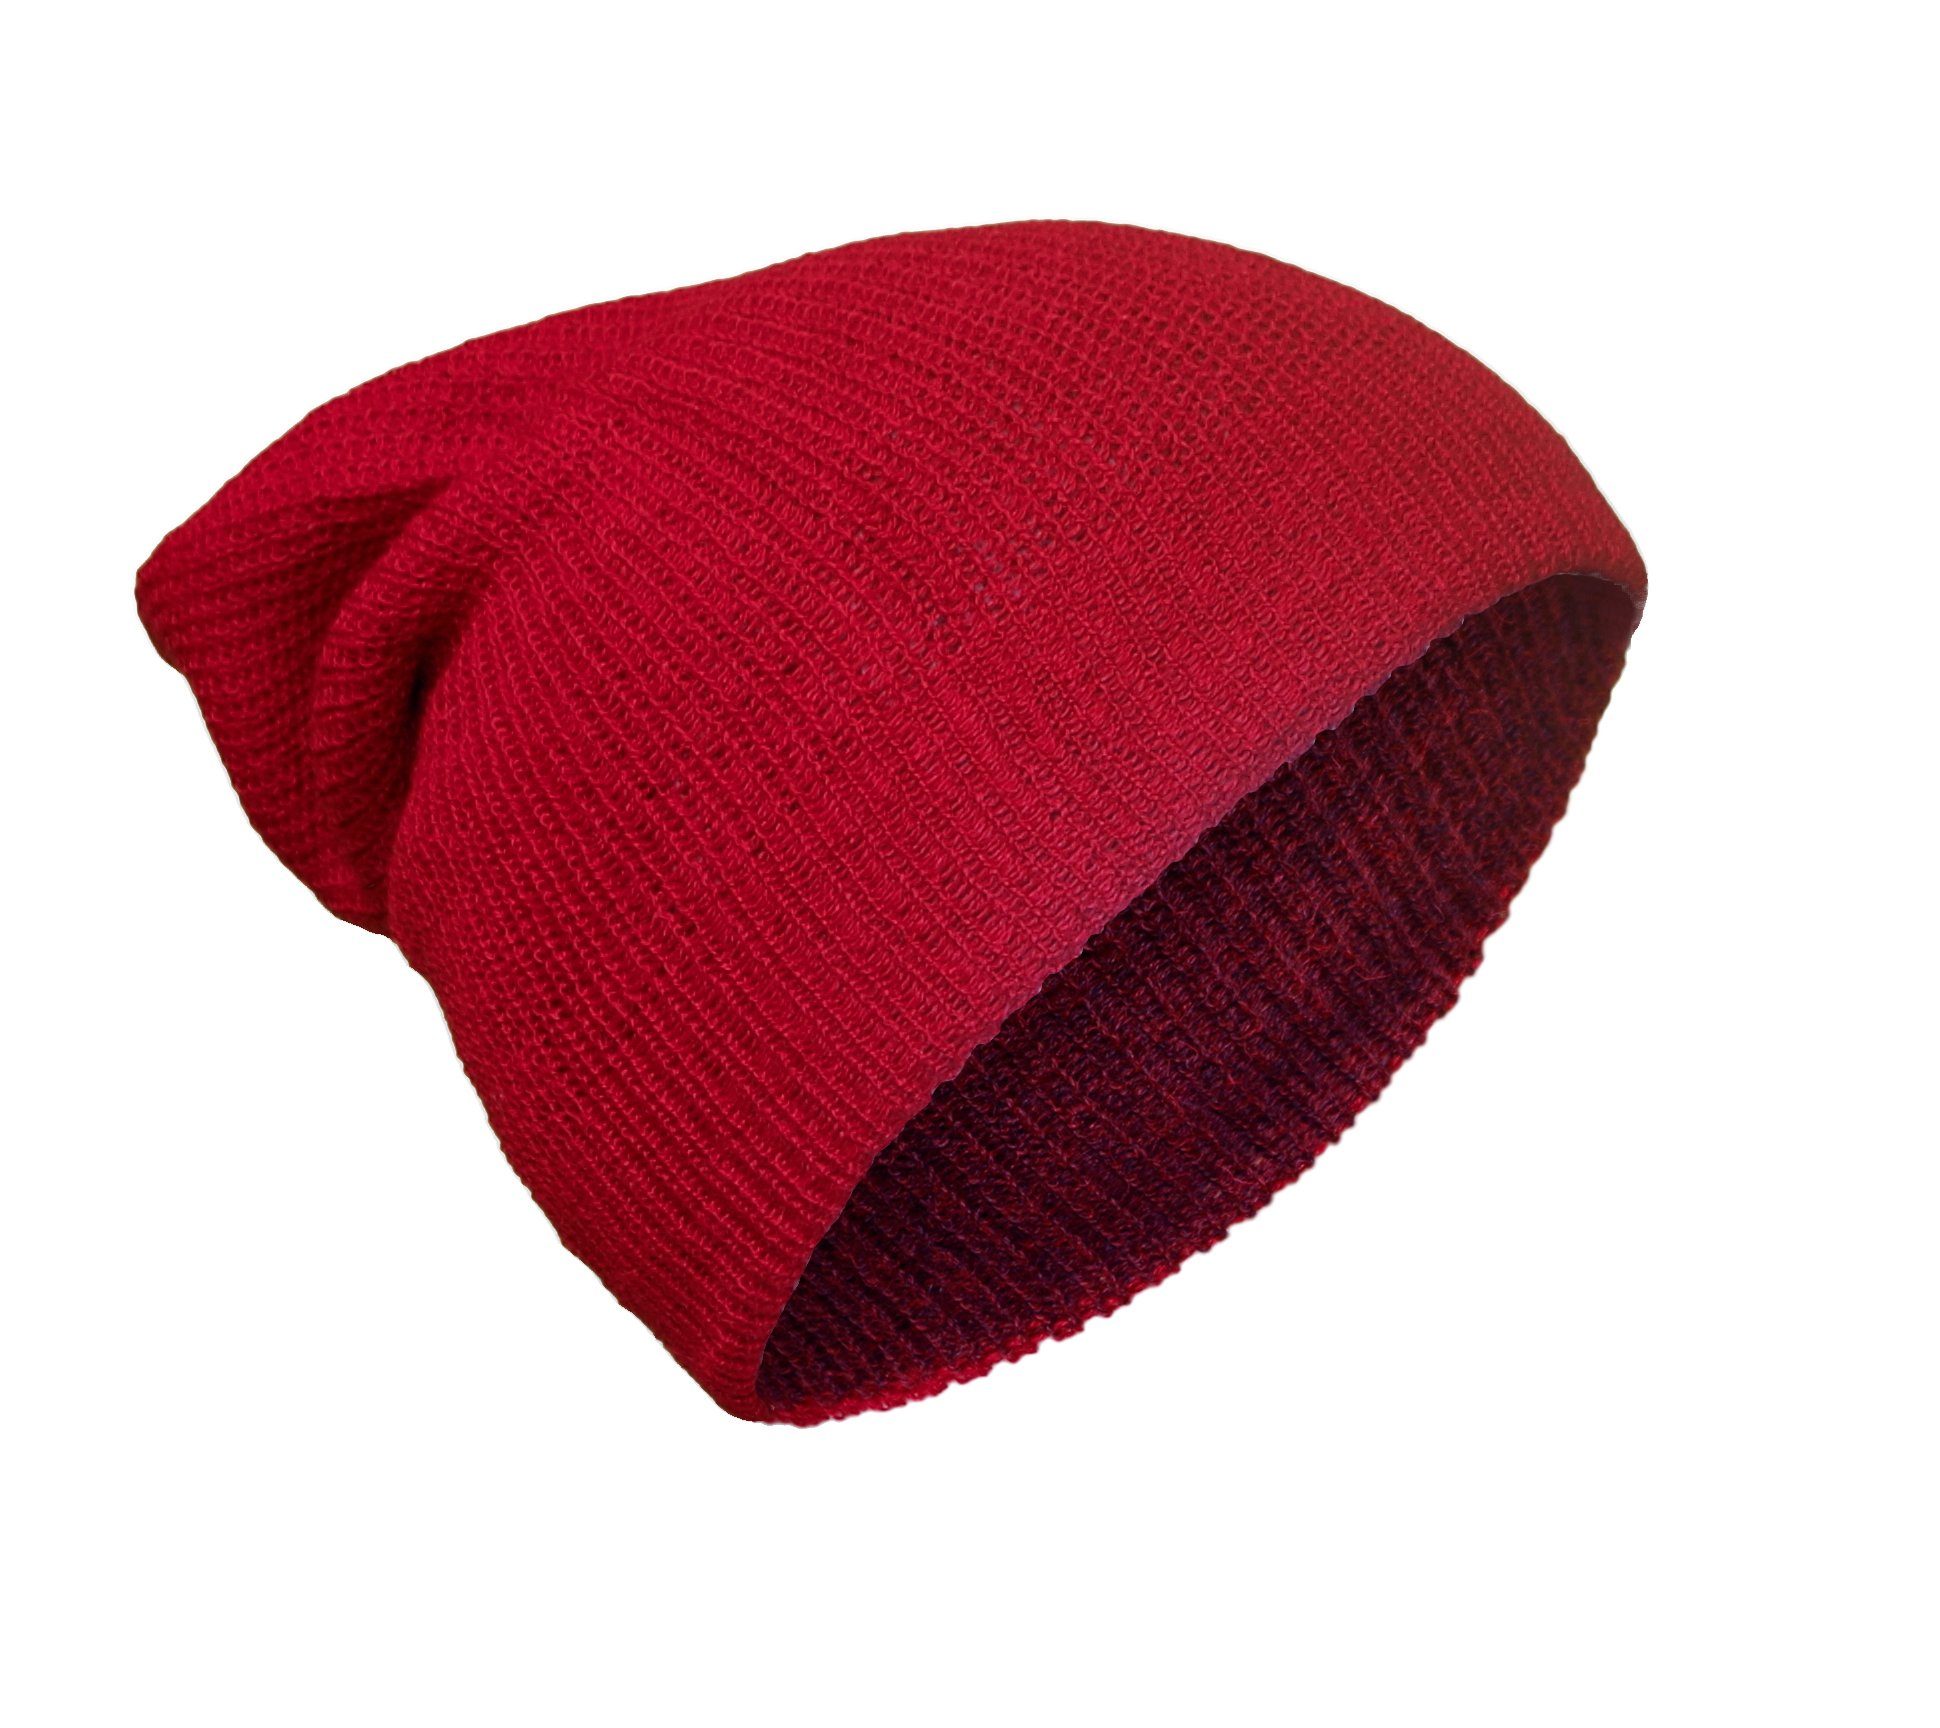 Posh Gear Strickmütze Alpaka Mütze Rettolana aus 100% Alpakawolle rot / dunkel rot